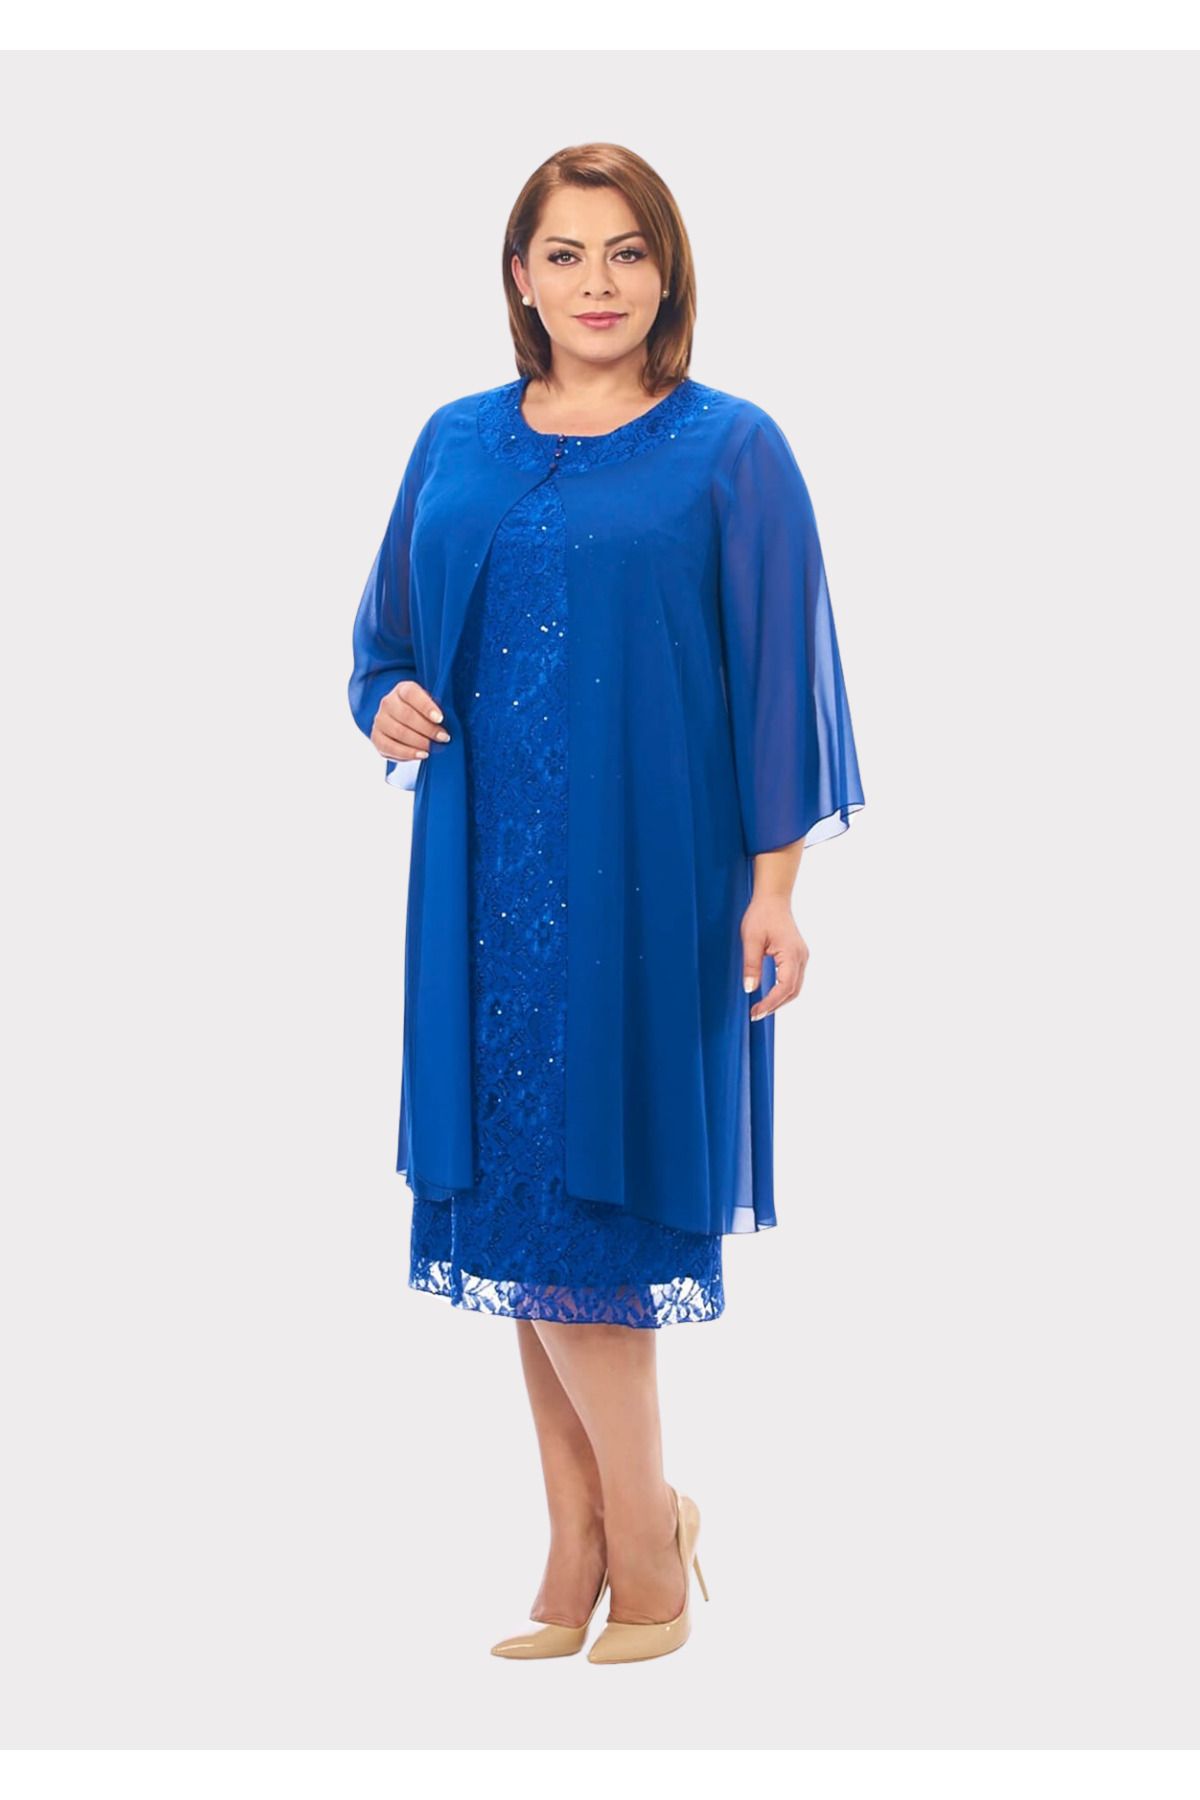 LİLAS XXL Büyük Beden Saks Mavisi Renkli Dantelli Dantelli Şifon Ceketli Abiye Elbise